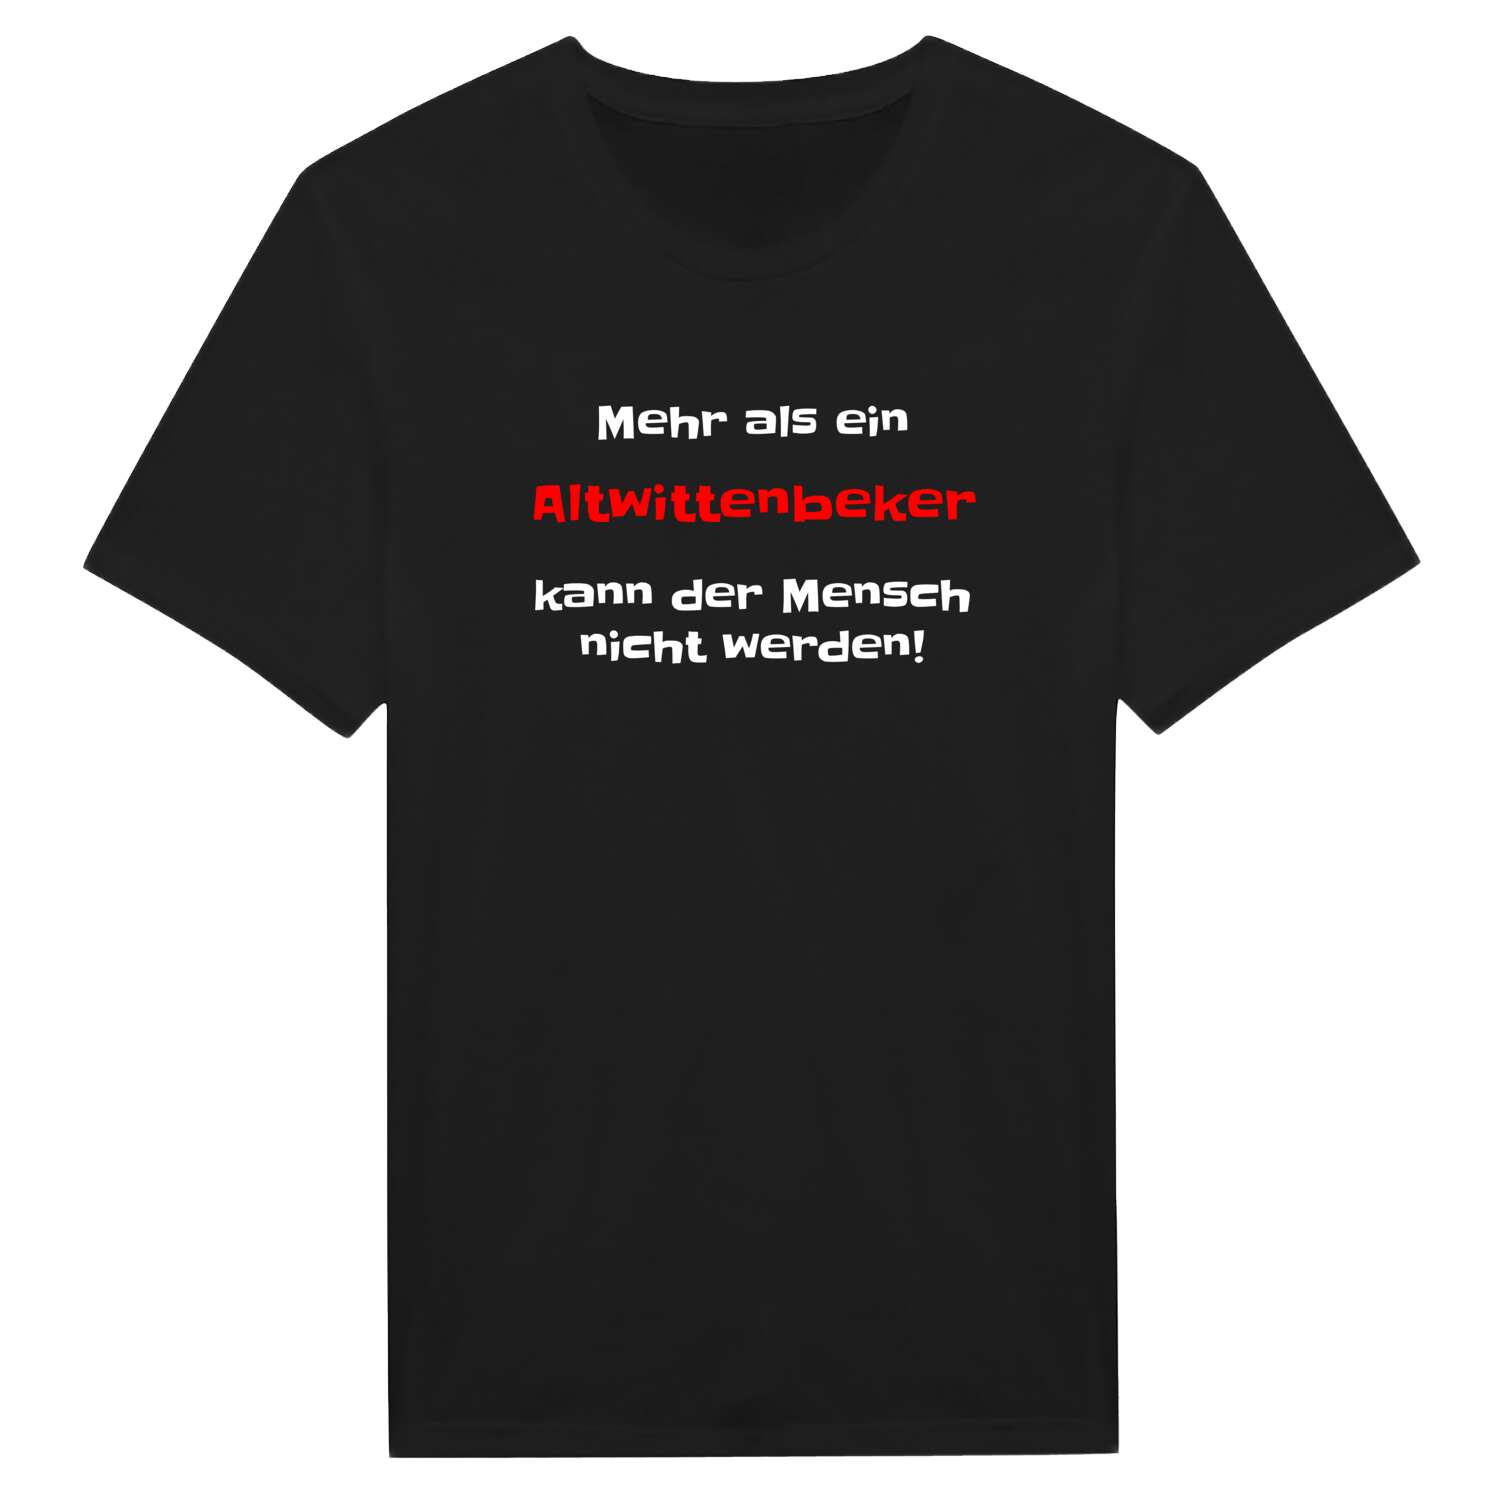 Altwittenbek T-Shirt »Mehr als ein«